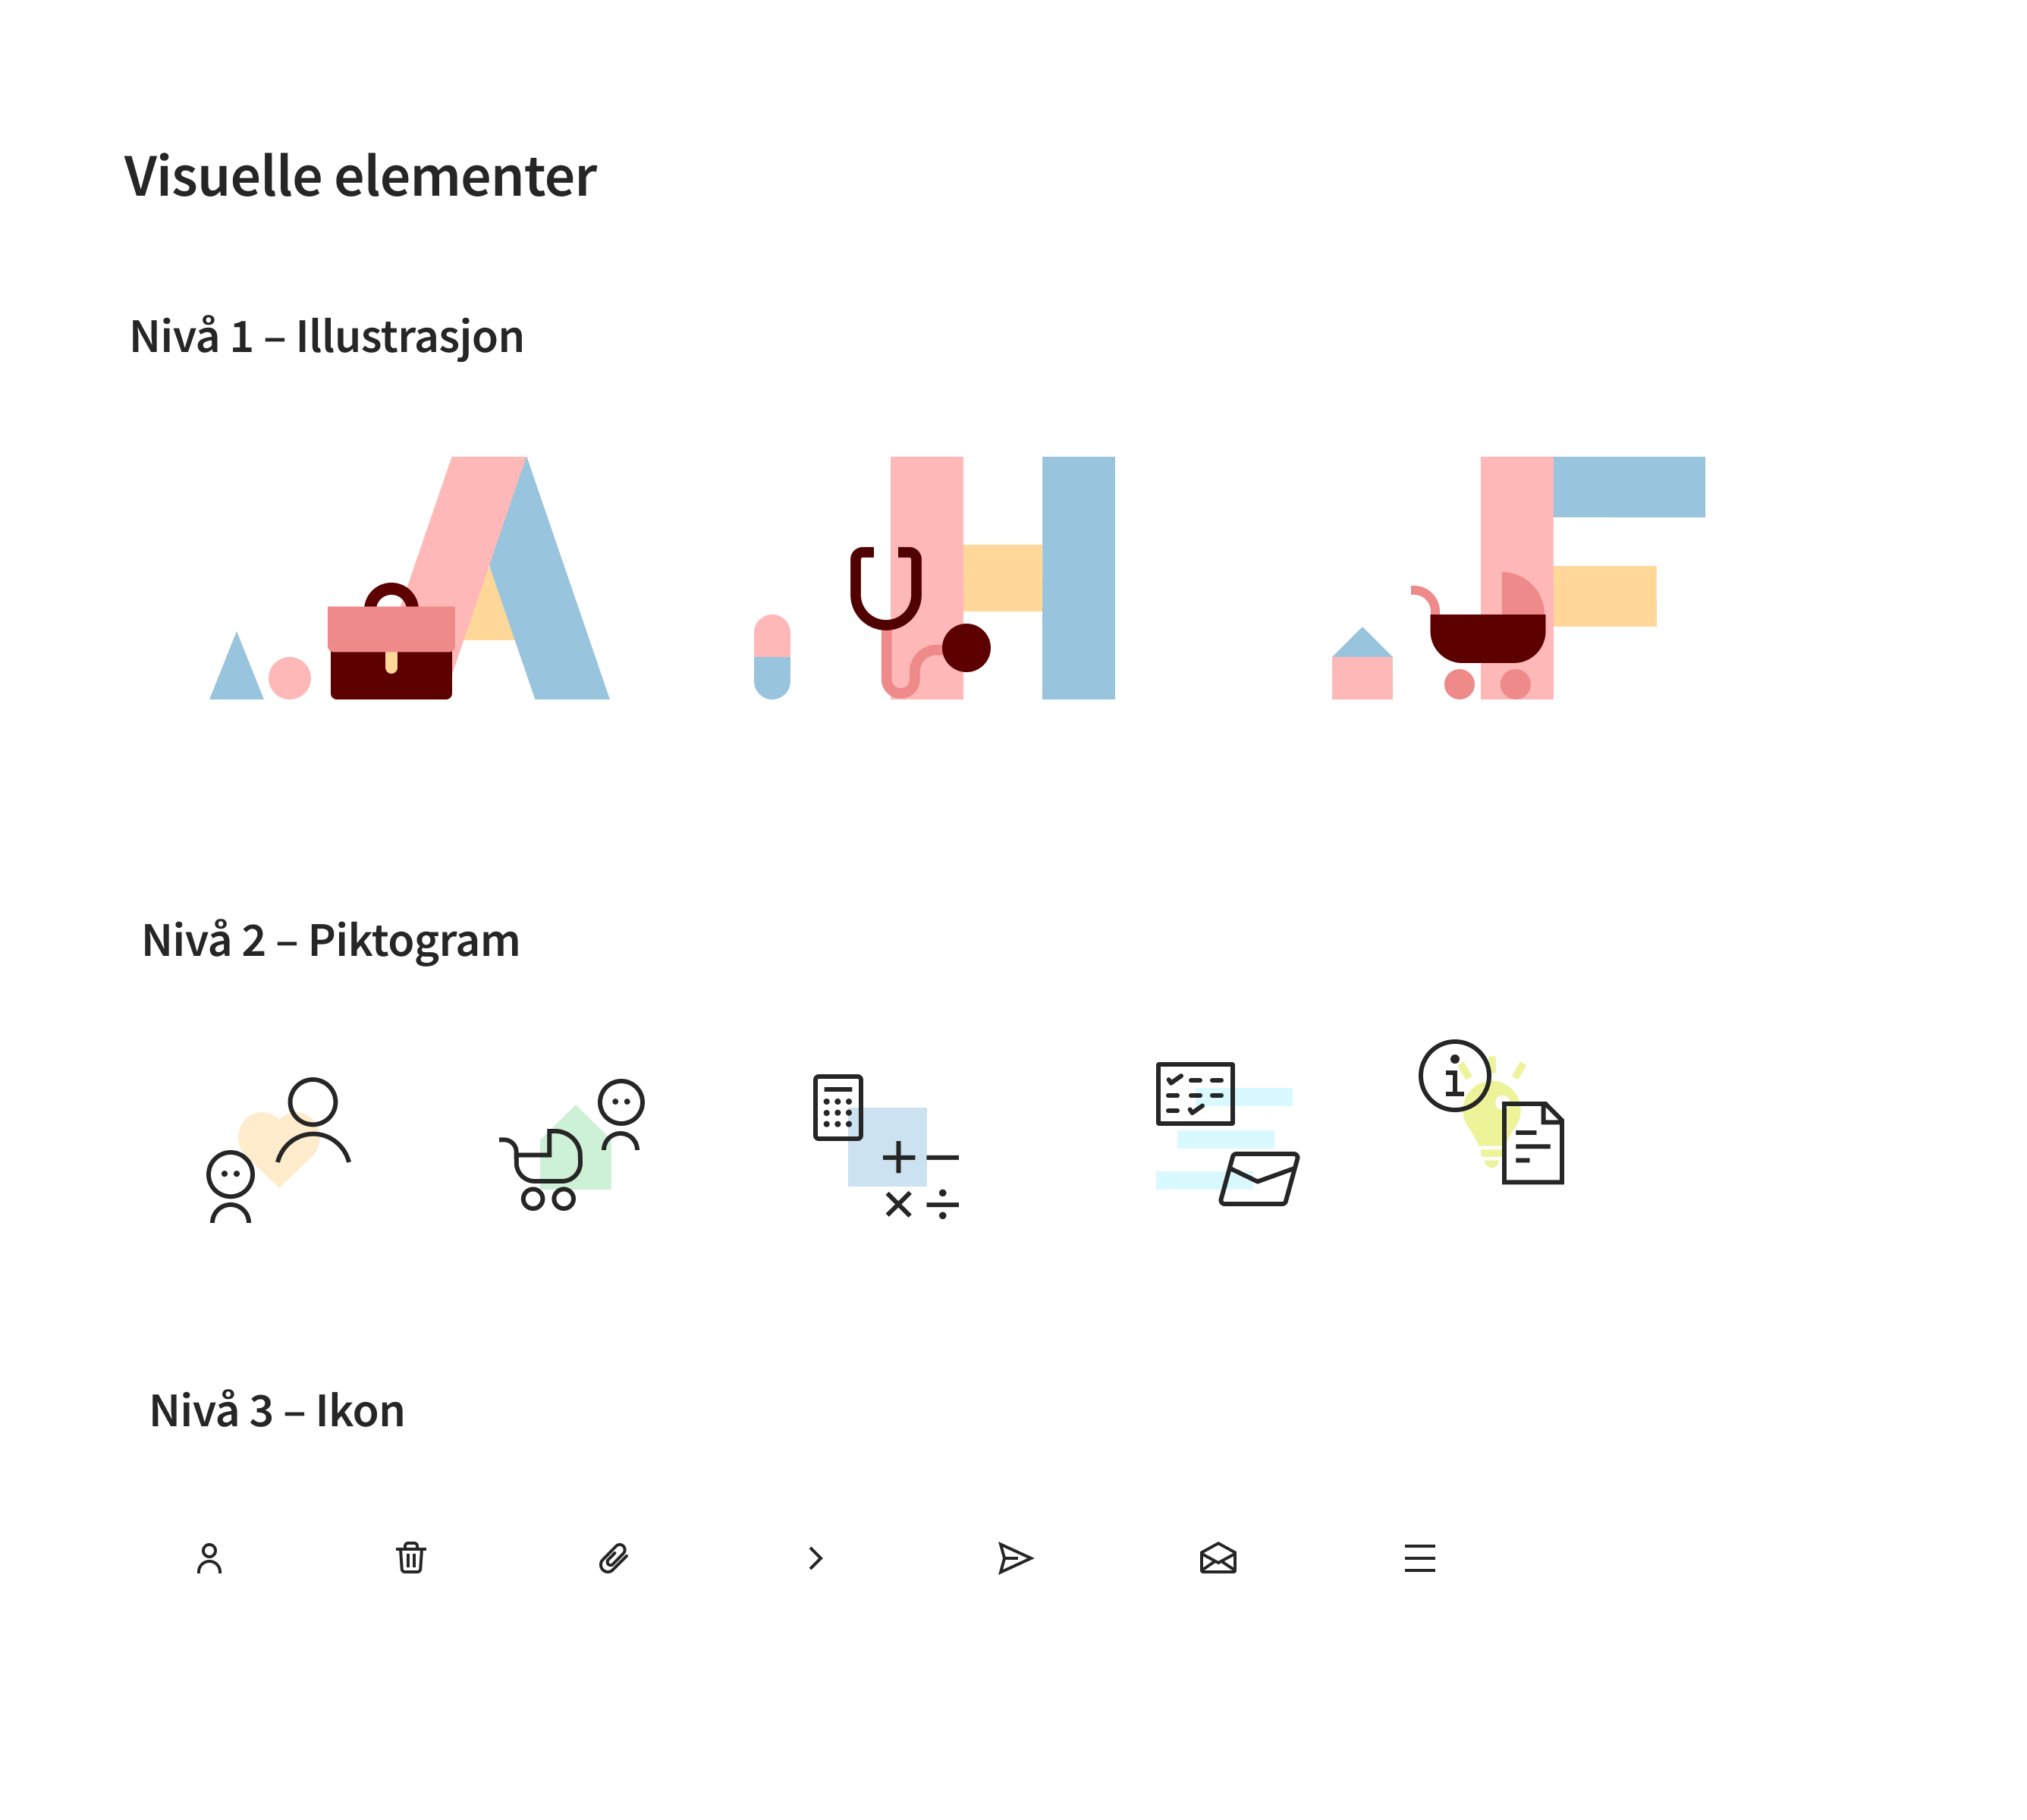 Visuelt hierarki for illustrasjoner (nivå 1), piktogram (nivå 2) og ikoner (nivå 3)